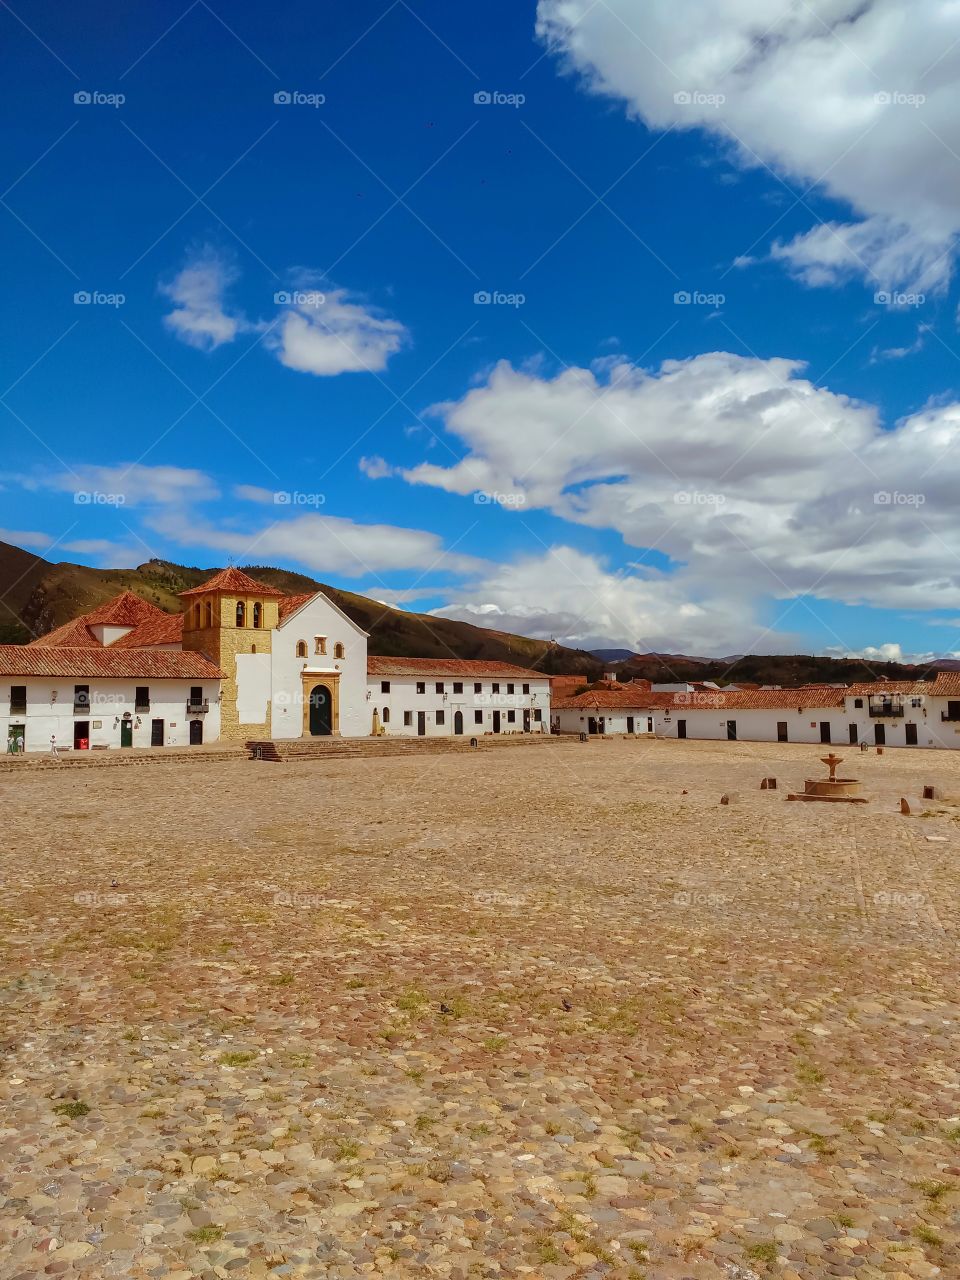 Villa de Leyva - Plaza principal en un día de sol y cielo azul en cuarentena. Main square on a sunny day and blue sky in quarantine